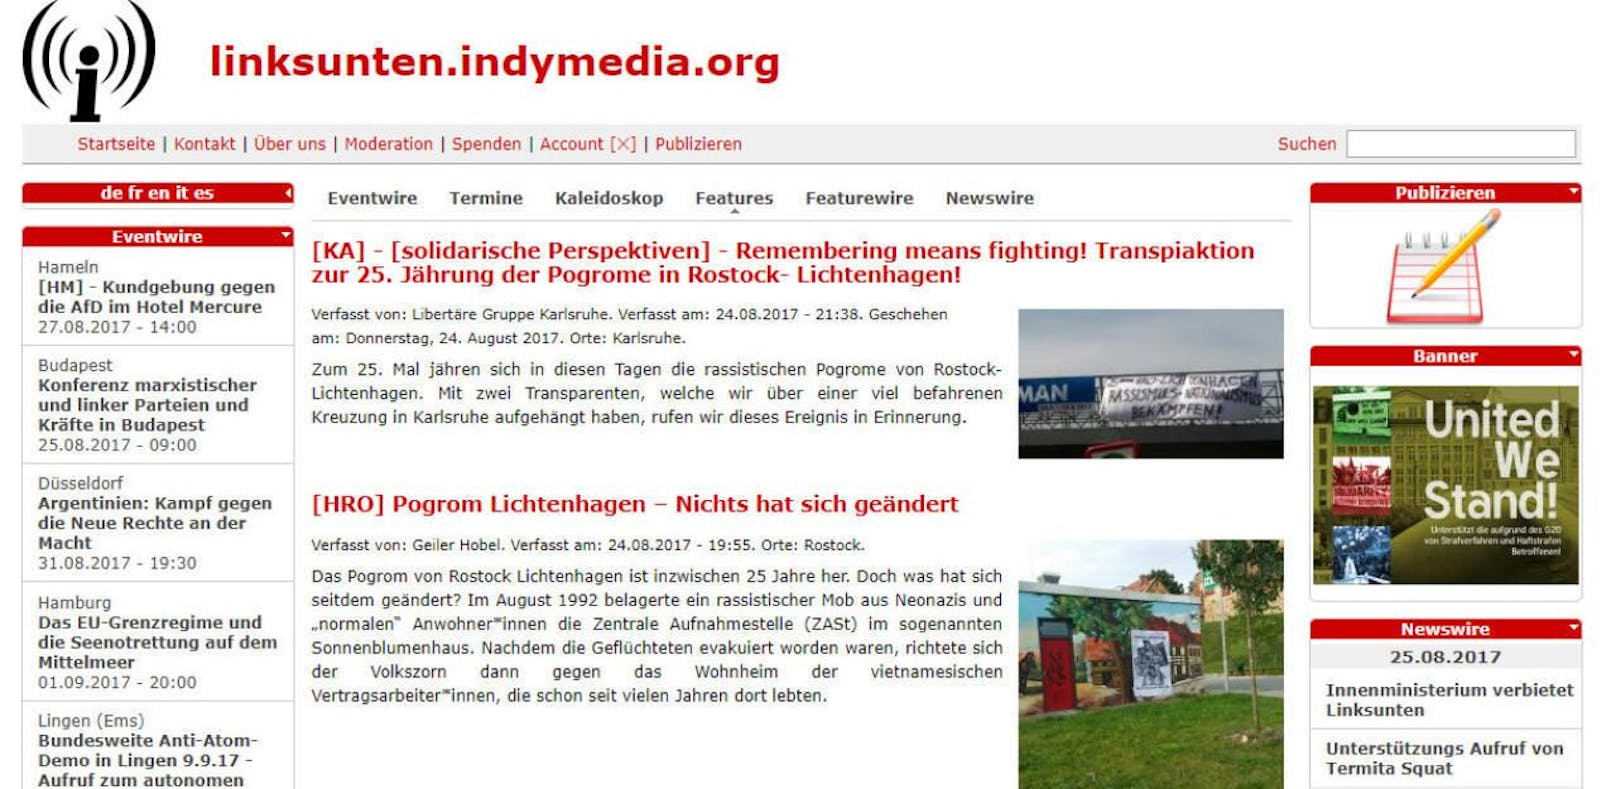 Deutsches Ministerium verbietet linke Website